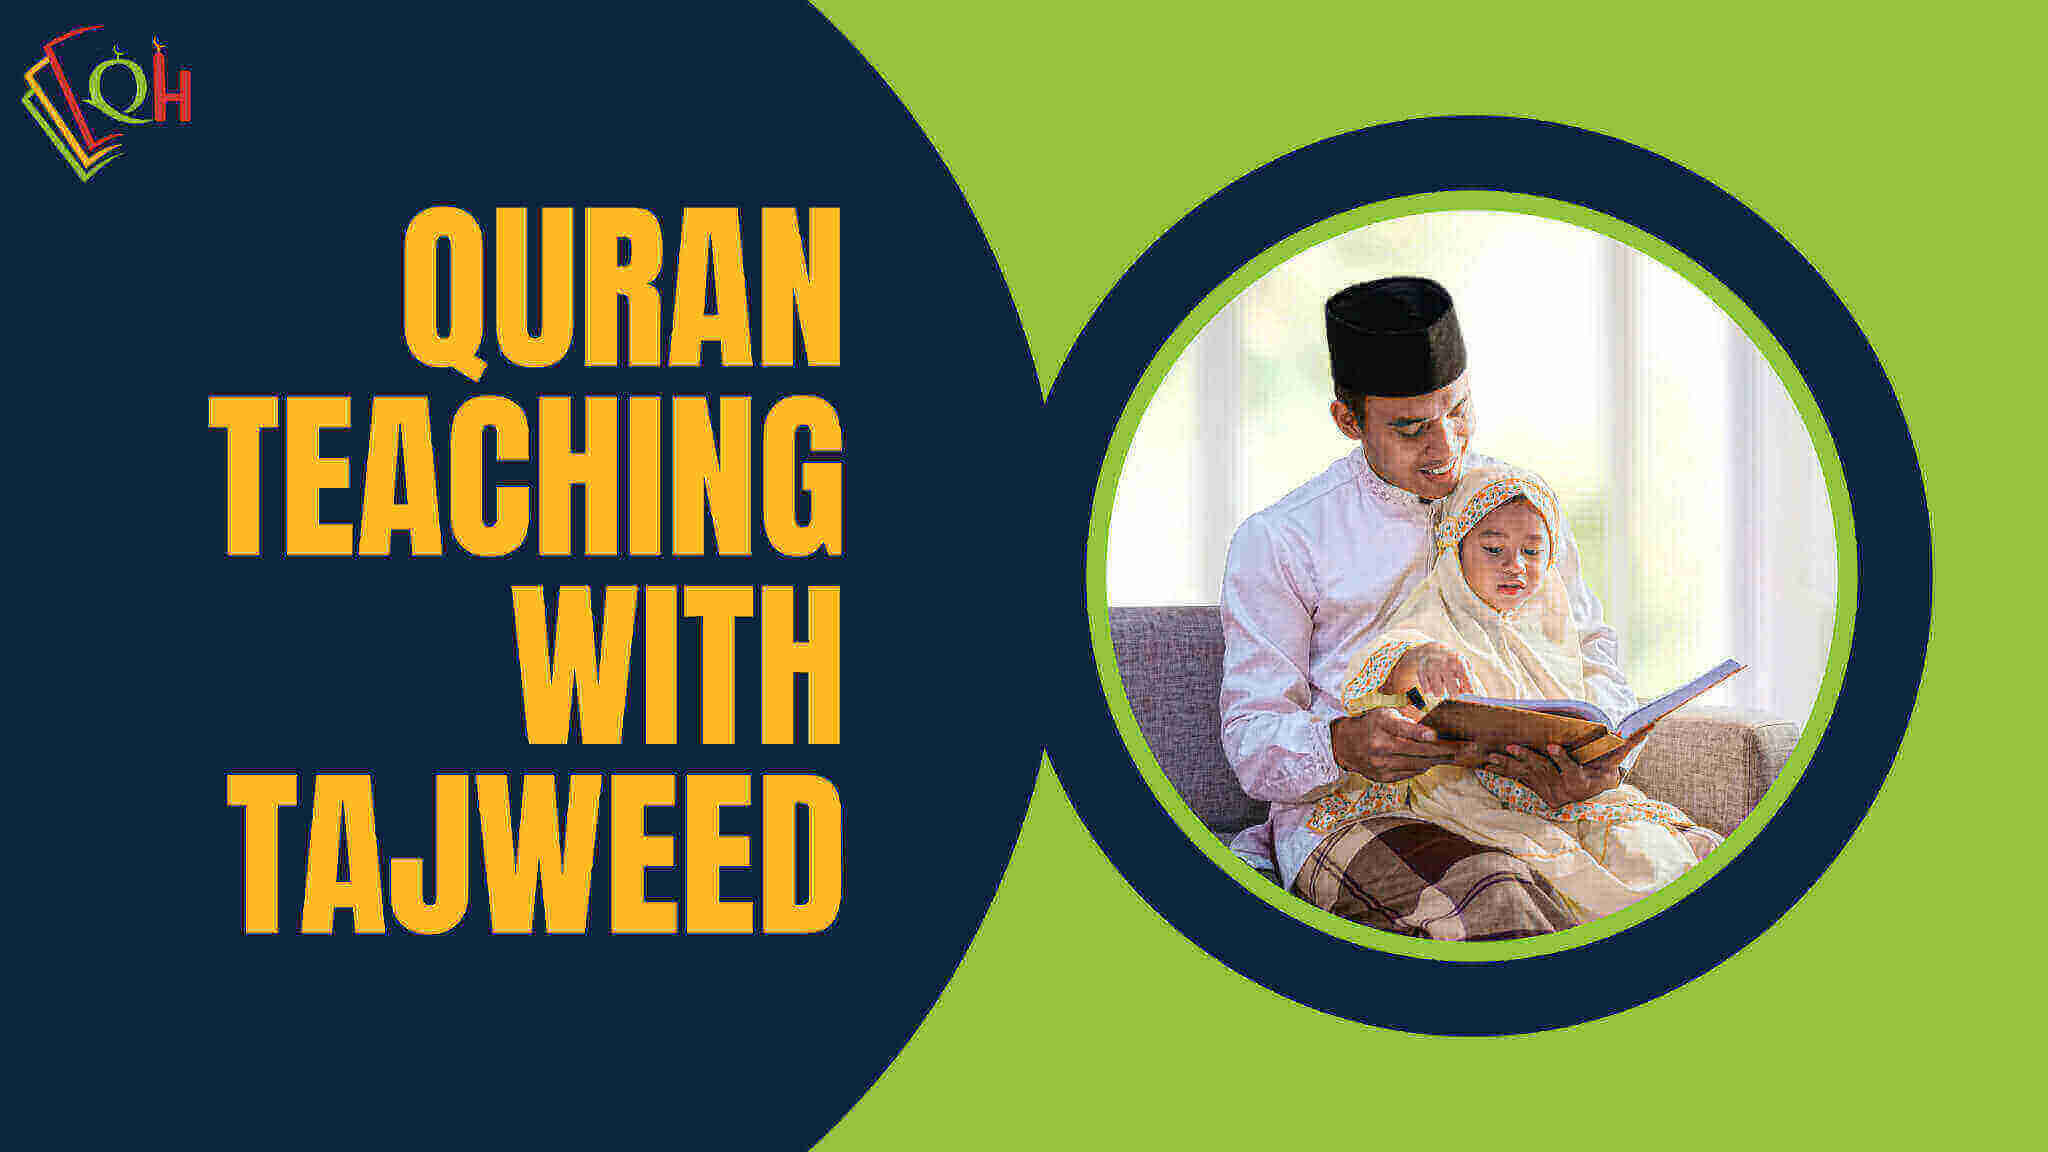 Quran teaching with tajweed